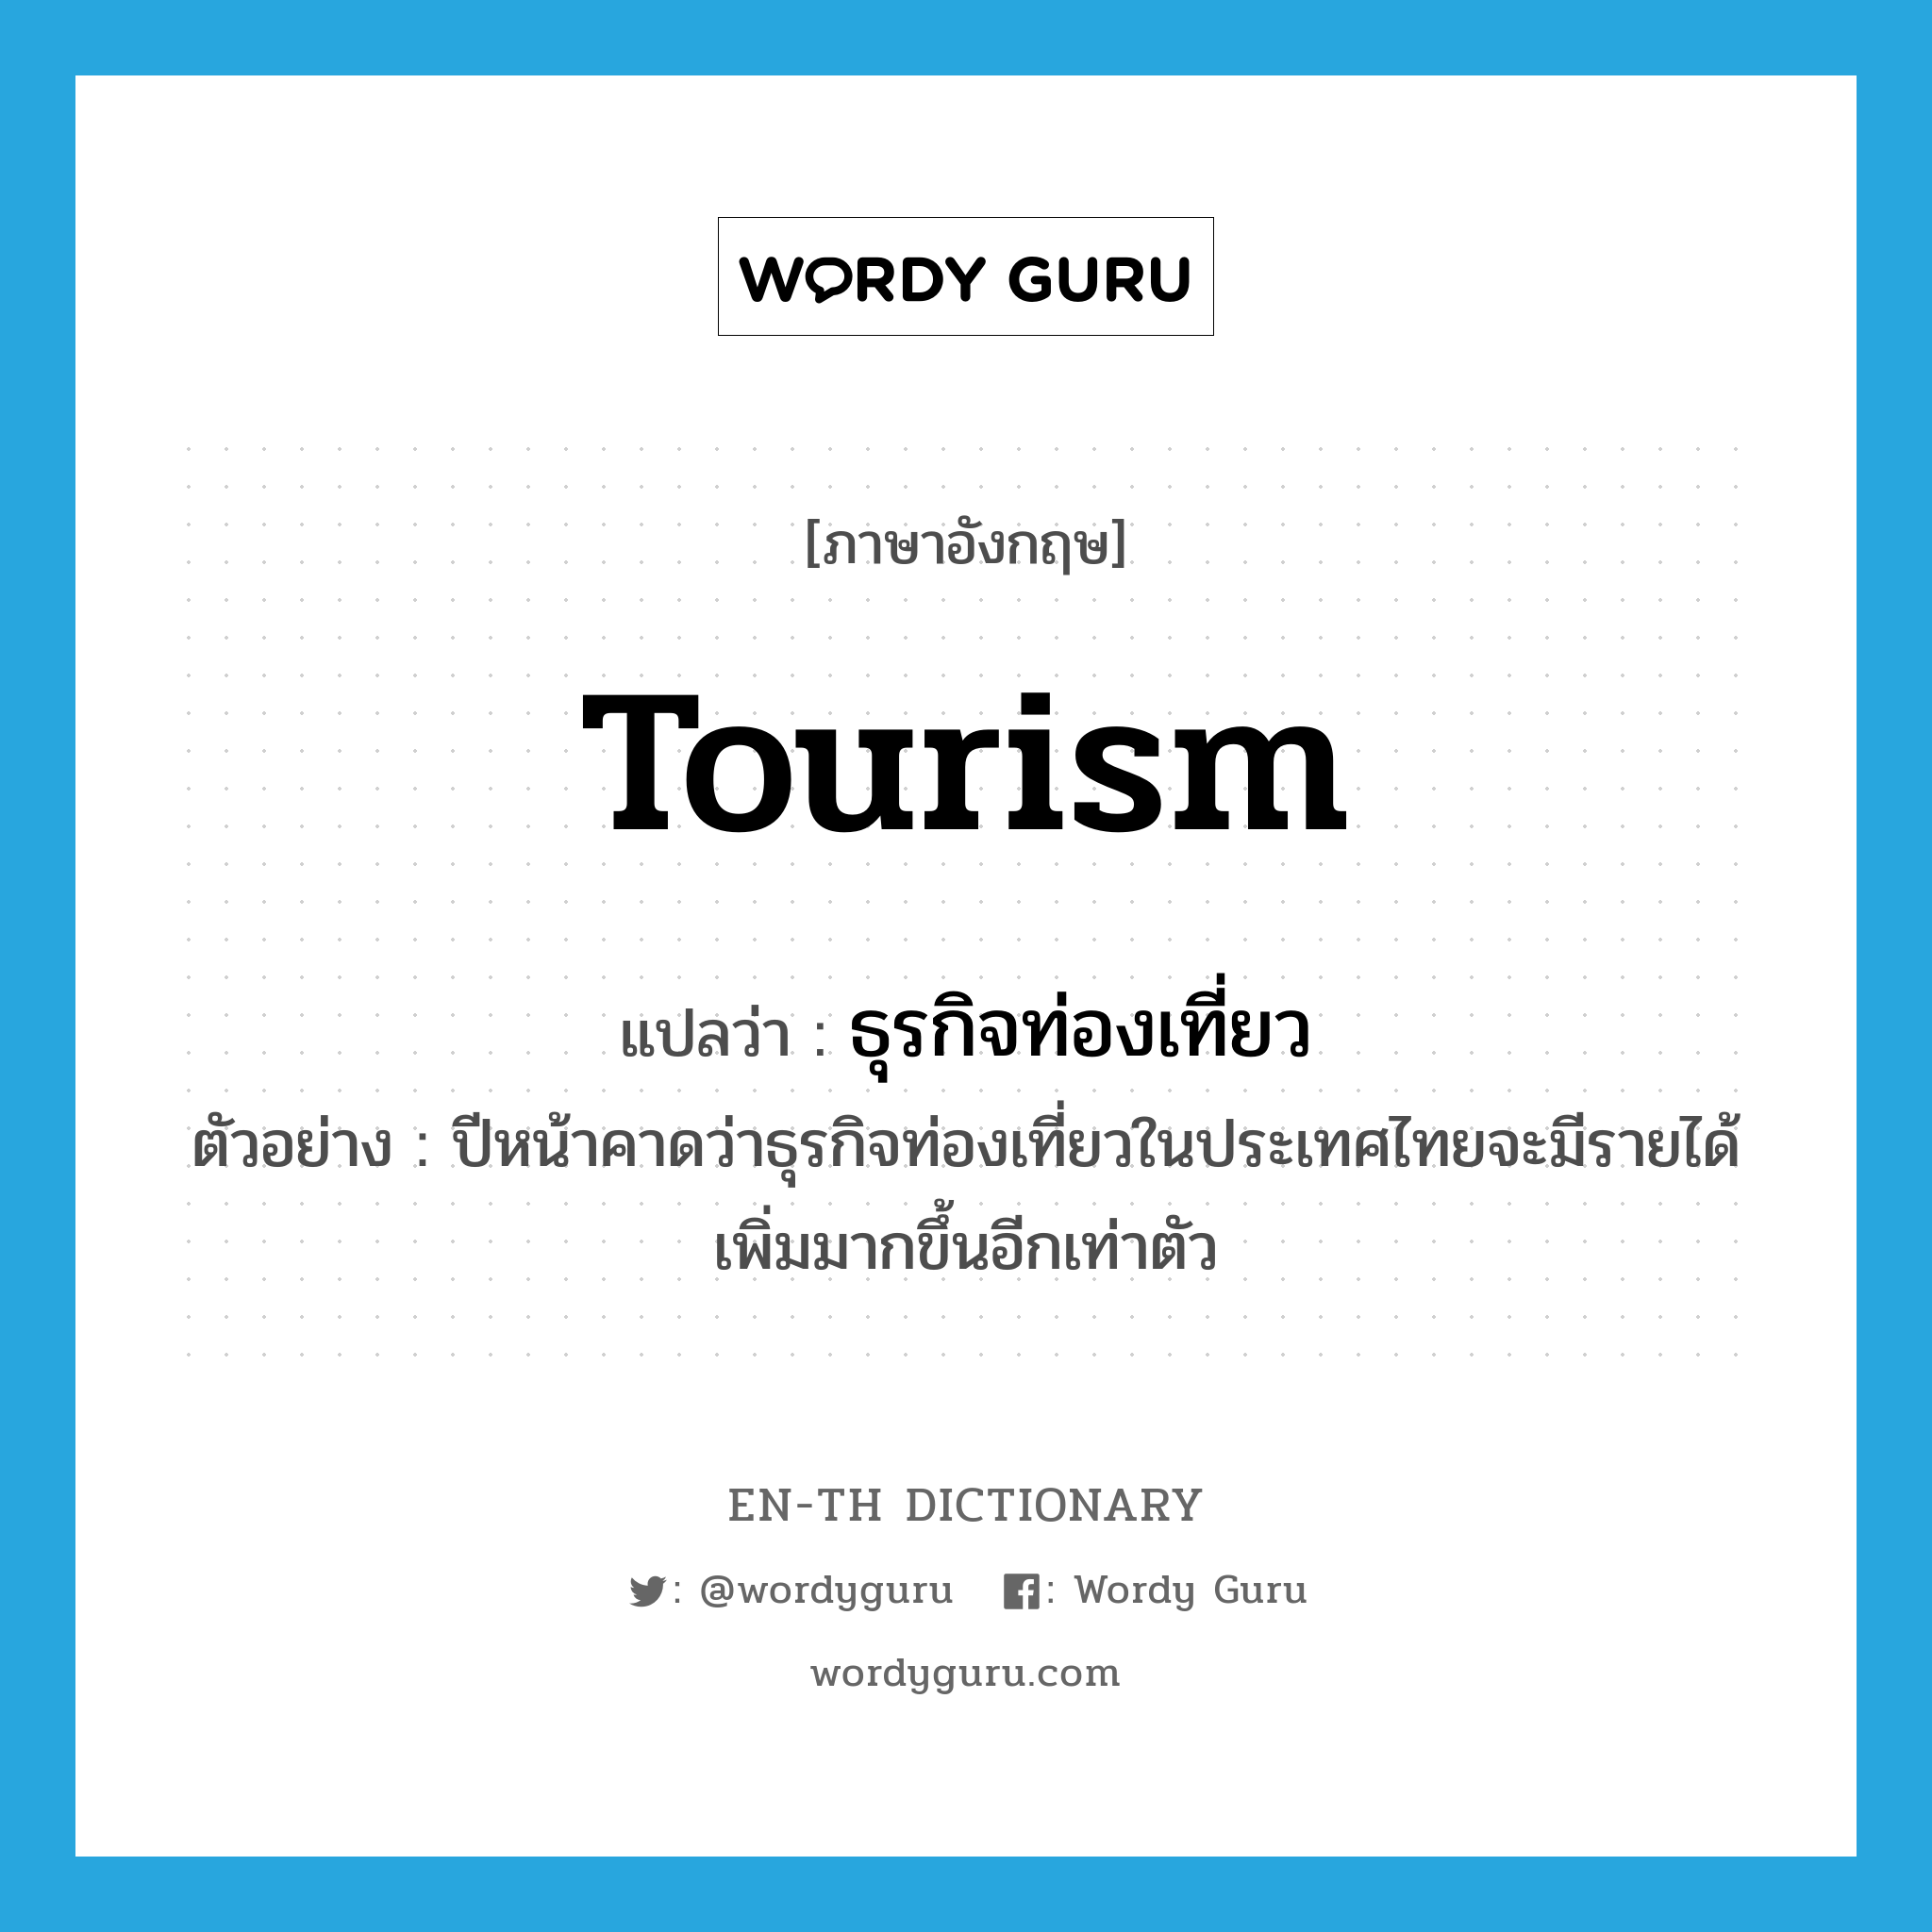 ธุรกิจท่องเที่ยว ภาษาอังกฤษ?, คำศัพท์ภาษาอังกฤษ ธุรกิจท่องเที่ยว แปลว่า tourism ประเภท N ตัวอย่าง ปีหน้าคาดว่าธุรกิจท่องเที่ยวในประเทศไทยจะมีรายได้เพิ่มมากขึ้นอีกเท่าตัว หมวด N